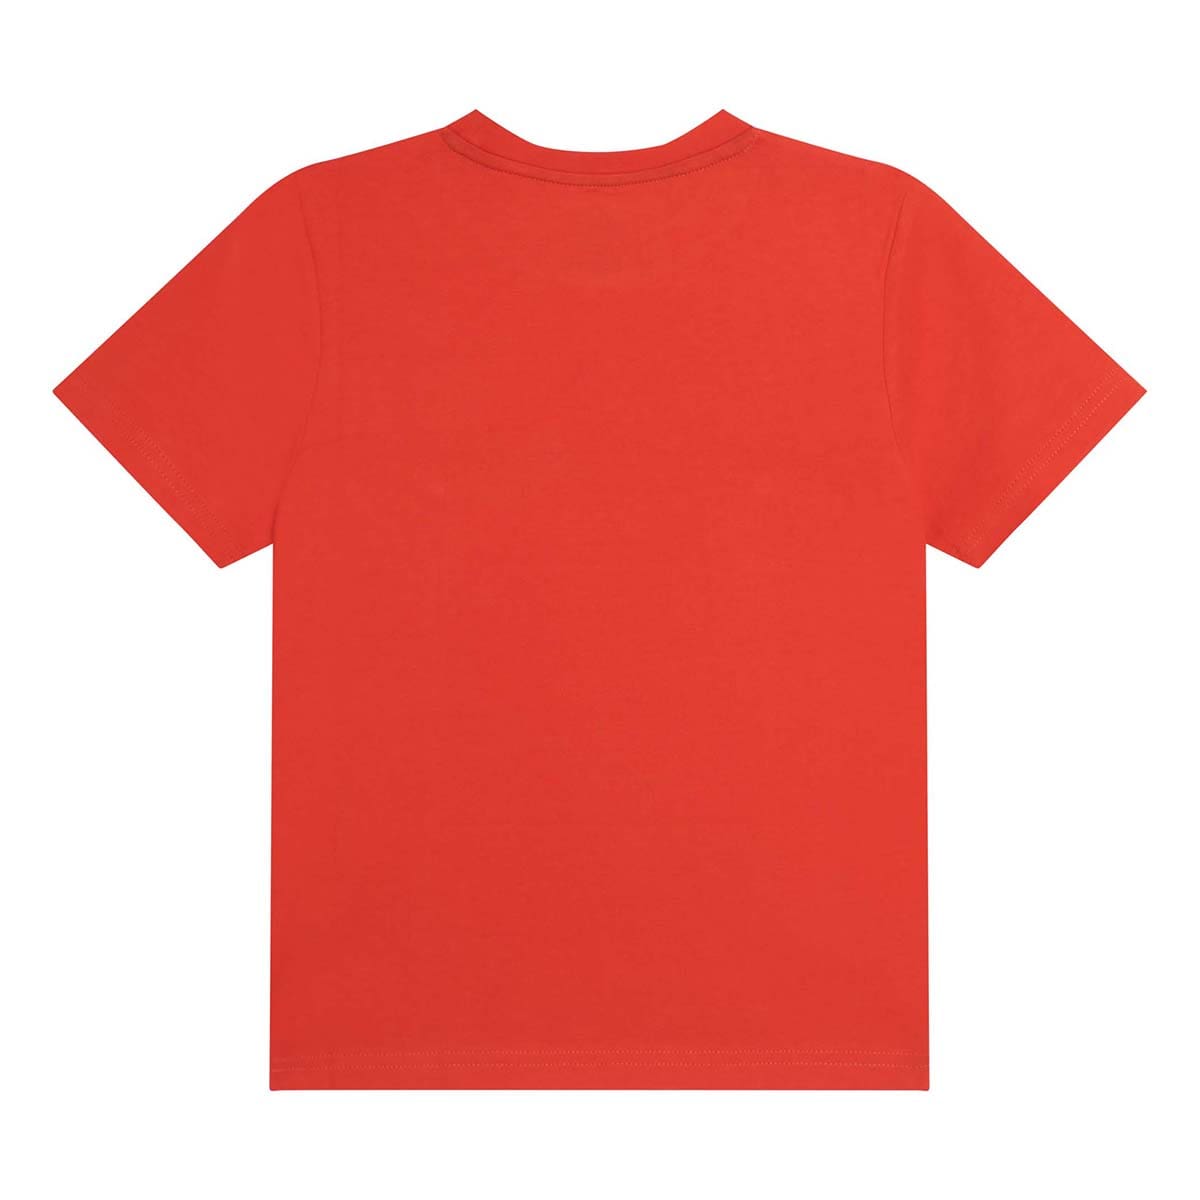 חולצת טי שרט TIMBERLAND פס צבע לילדים